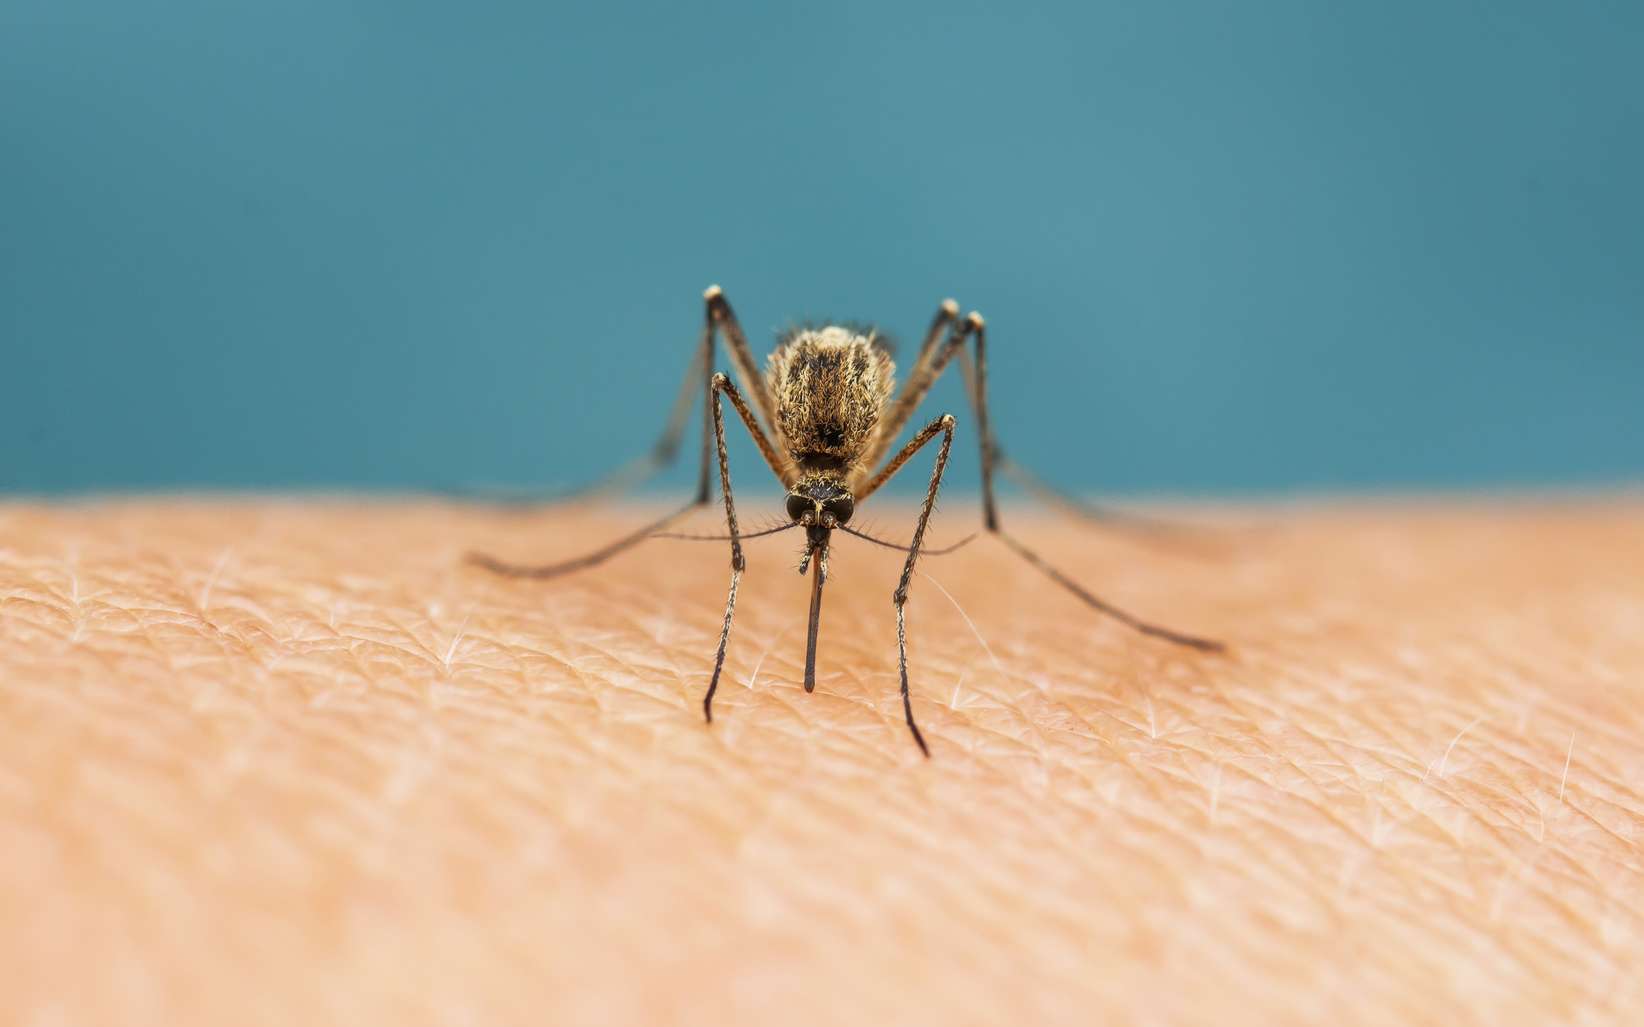 Les moustiques attirés par l'odeur d'acide lactique dans la sueur humaine